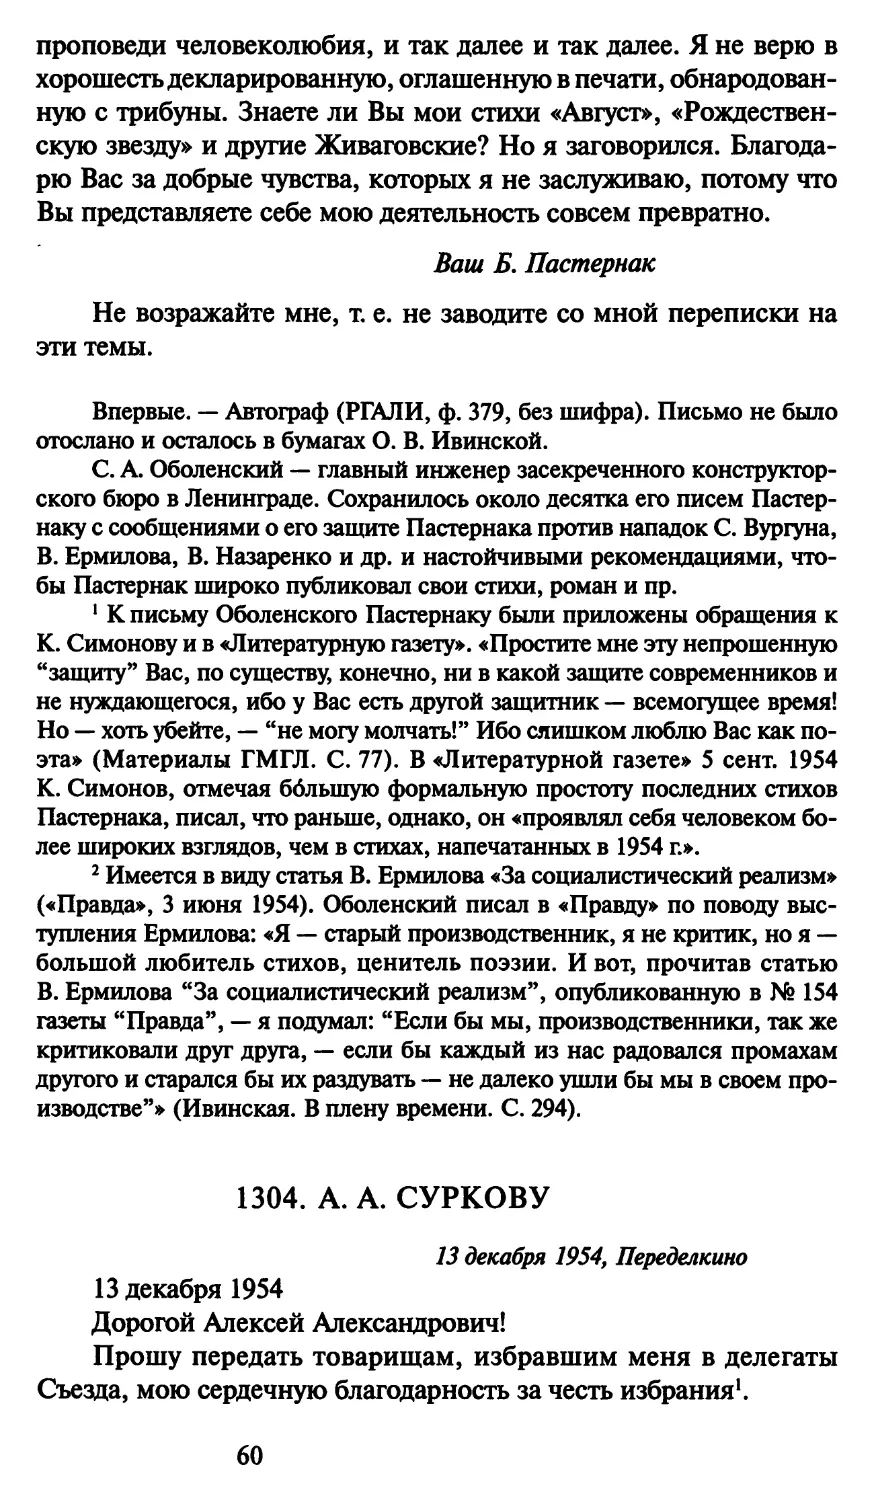 1304. А. А. Суркову 13 декабря 1954